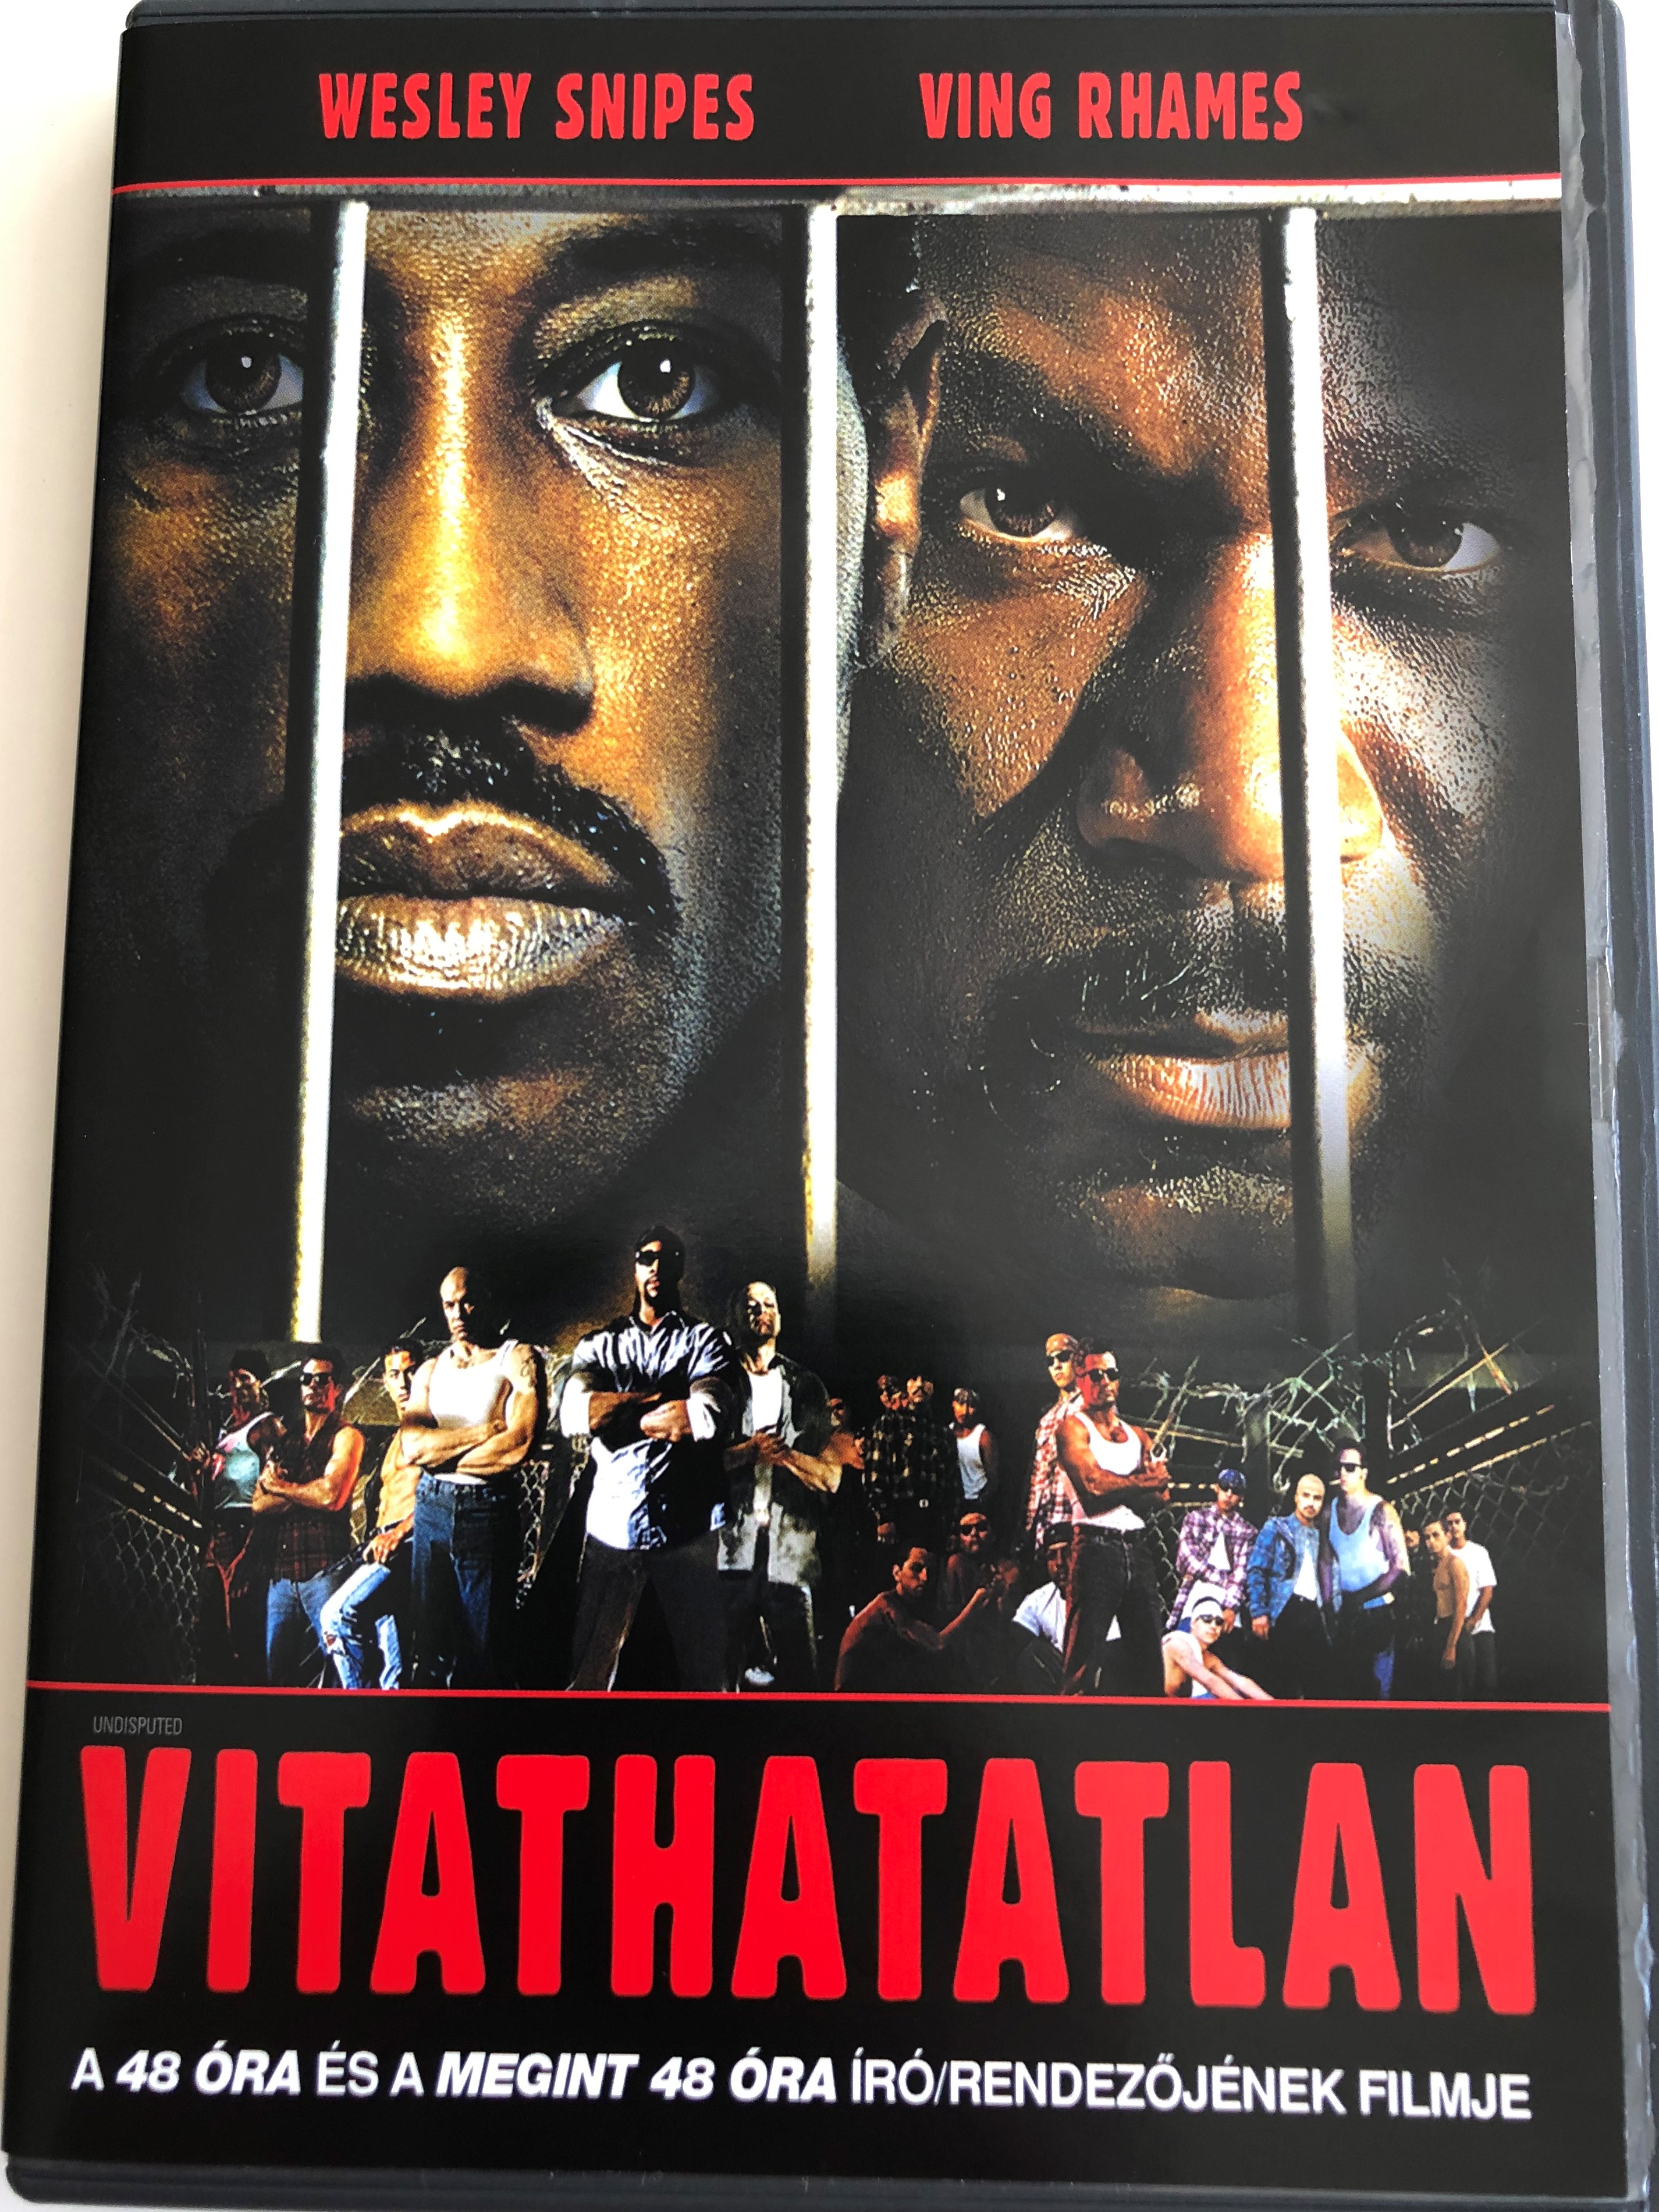 undisputed-dvd-2002-vitathatatlan-directed-by-walter-hill-starring-wesley-snipes-ving-rhames-1-.jpg